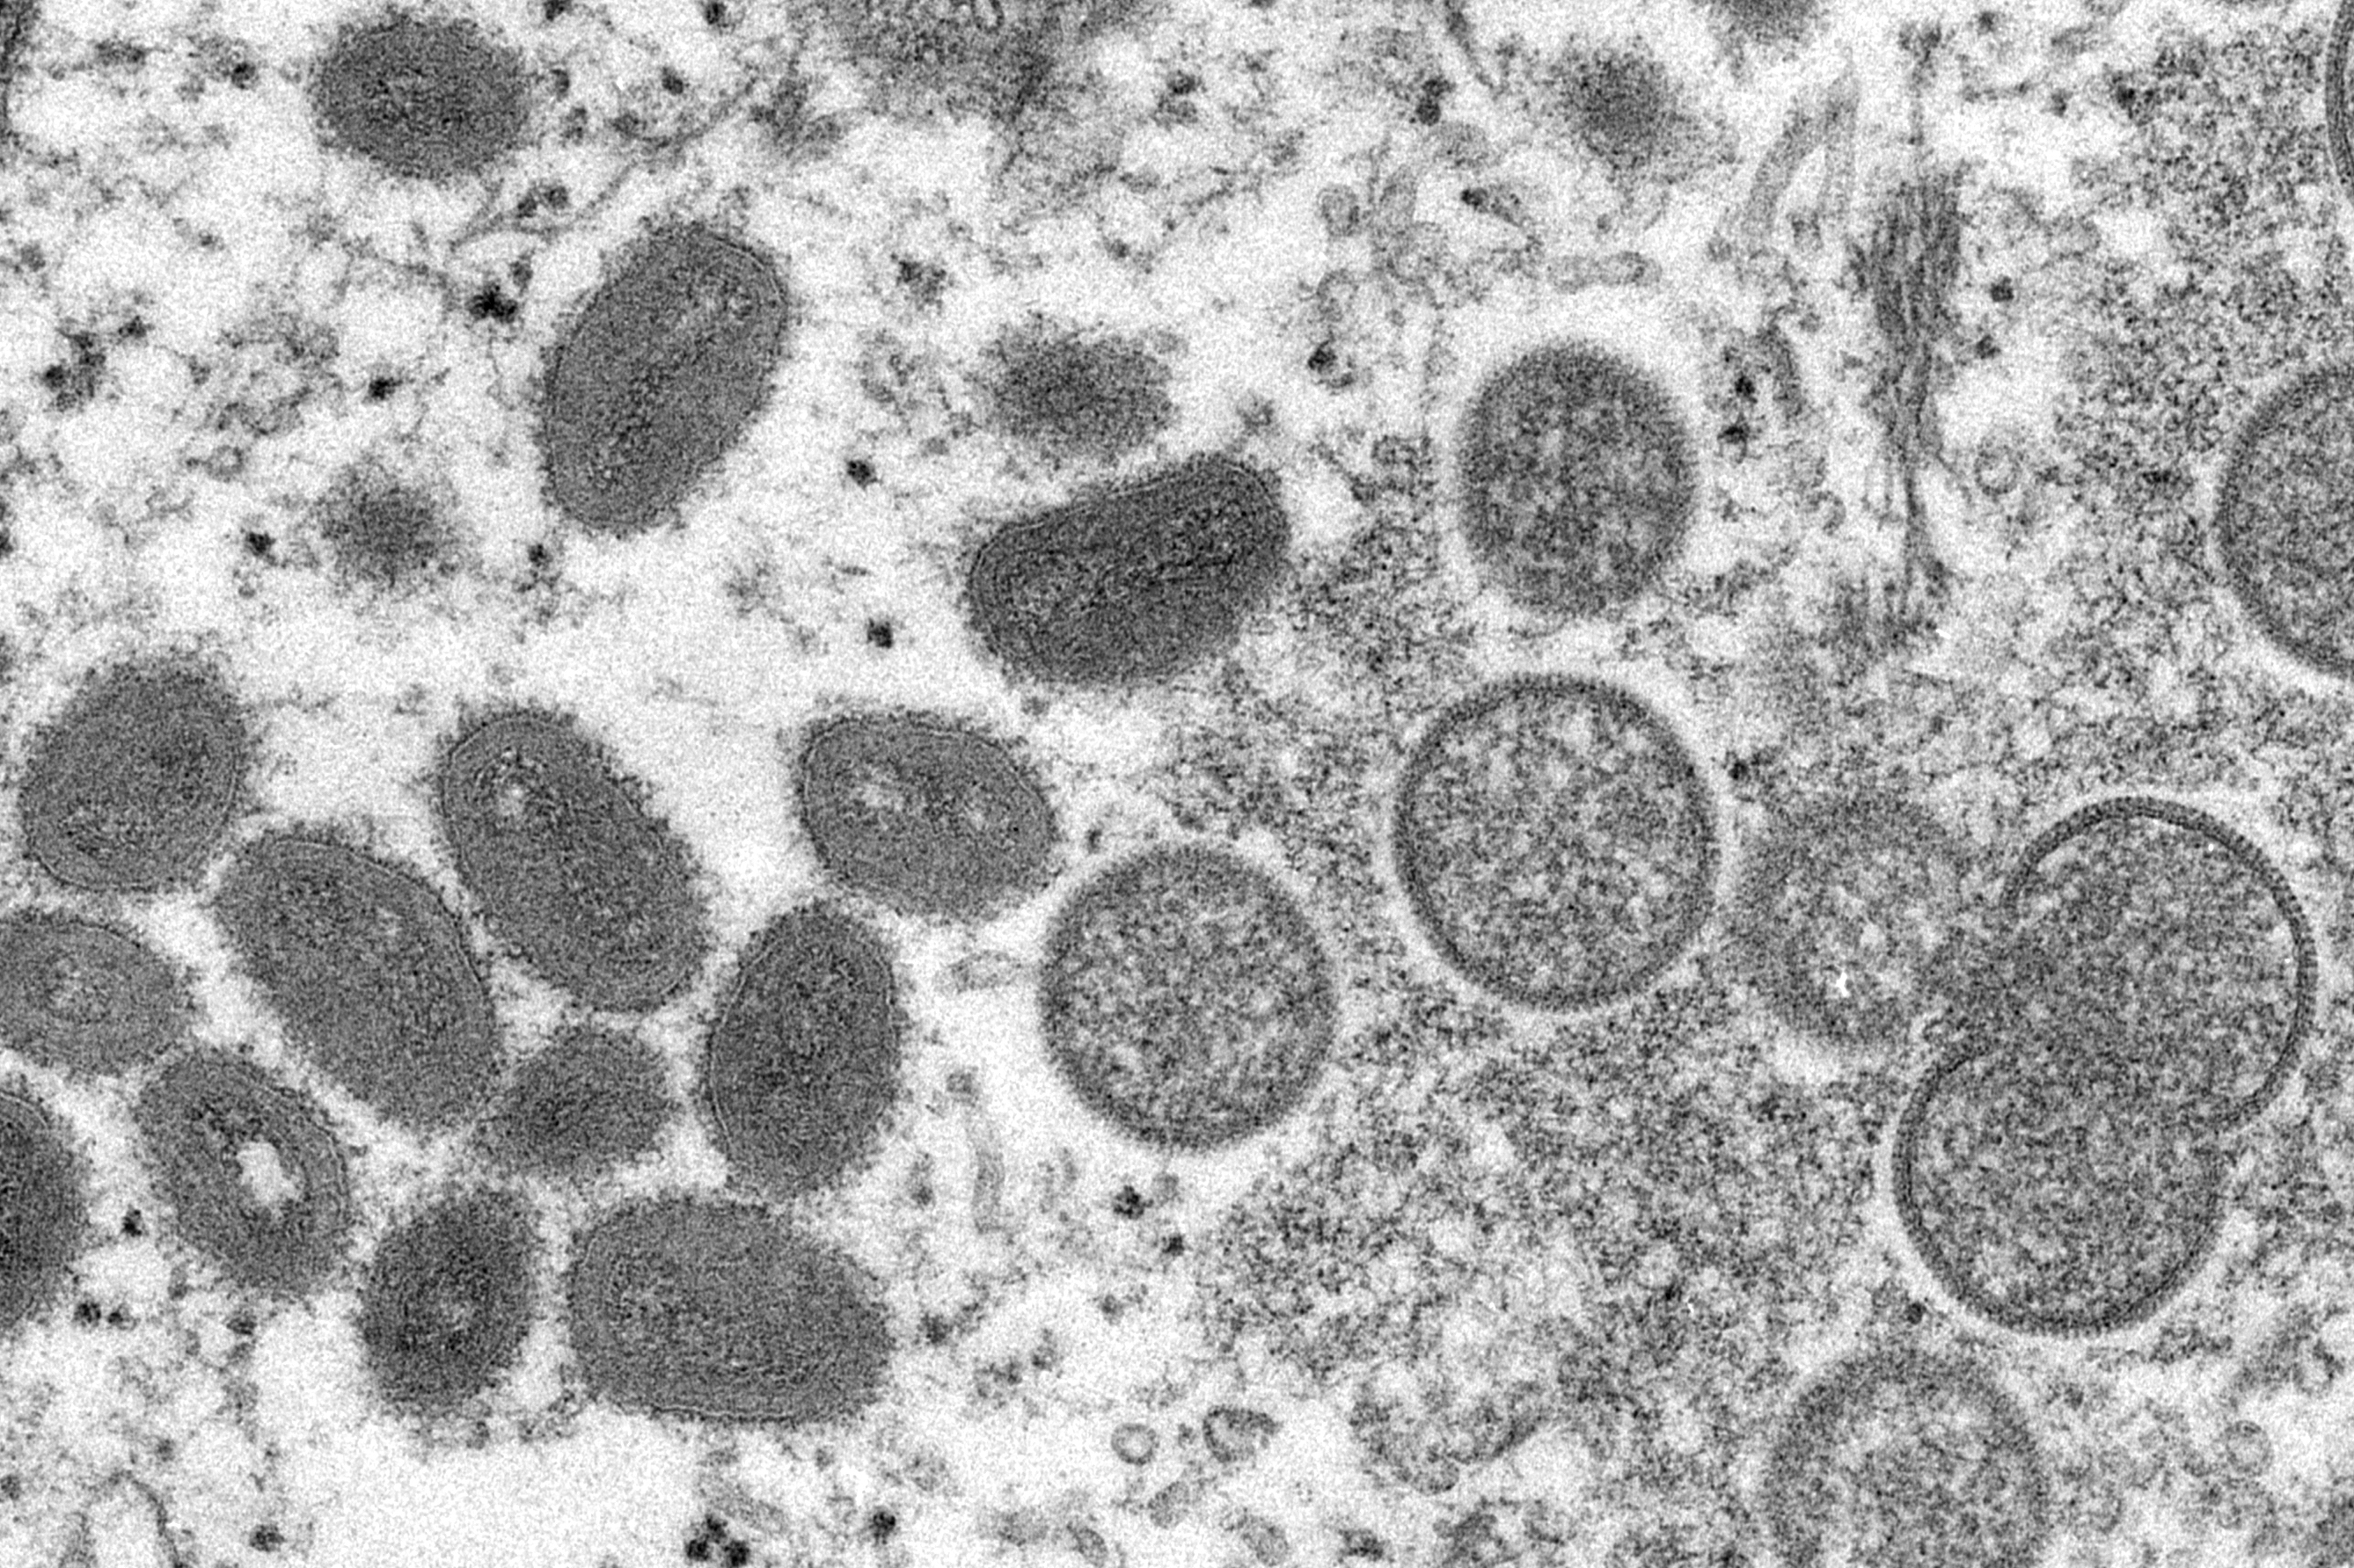 Viriones de la viruela del mono, en una imagen de microscopio.